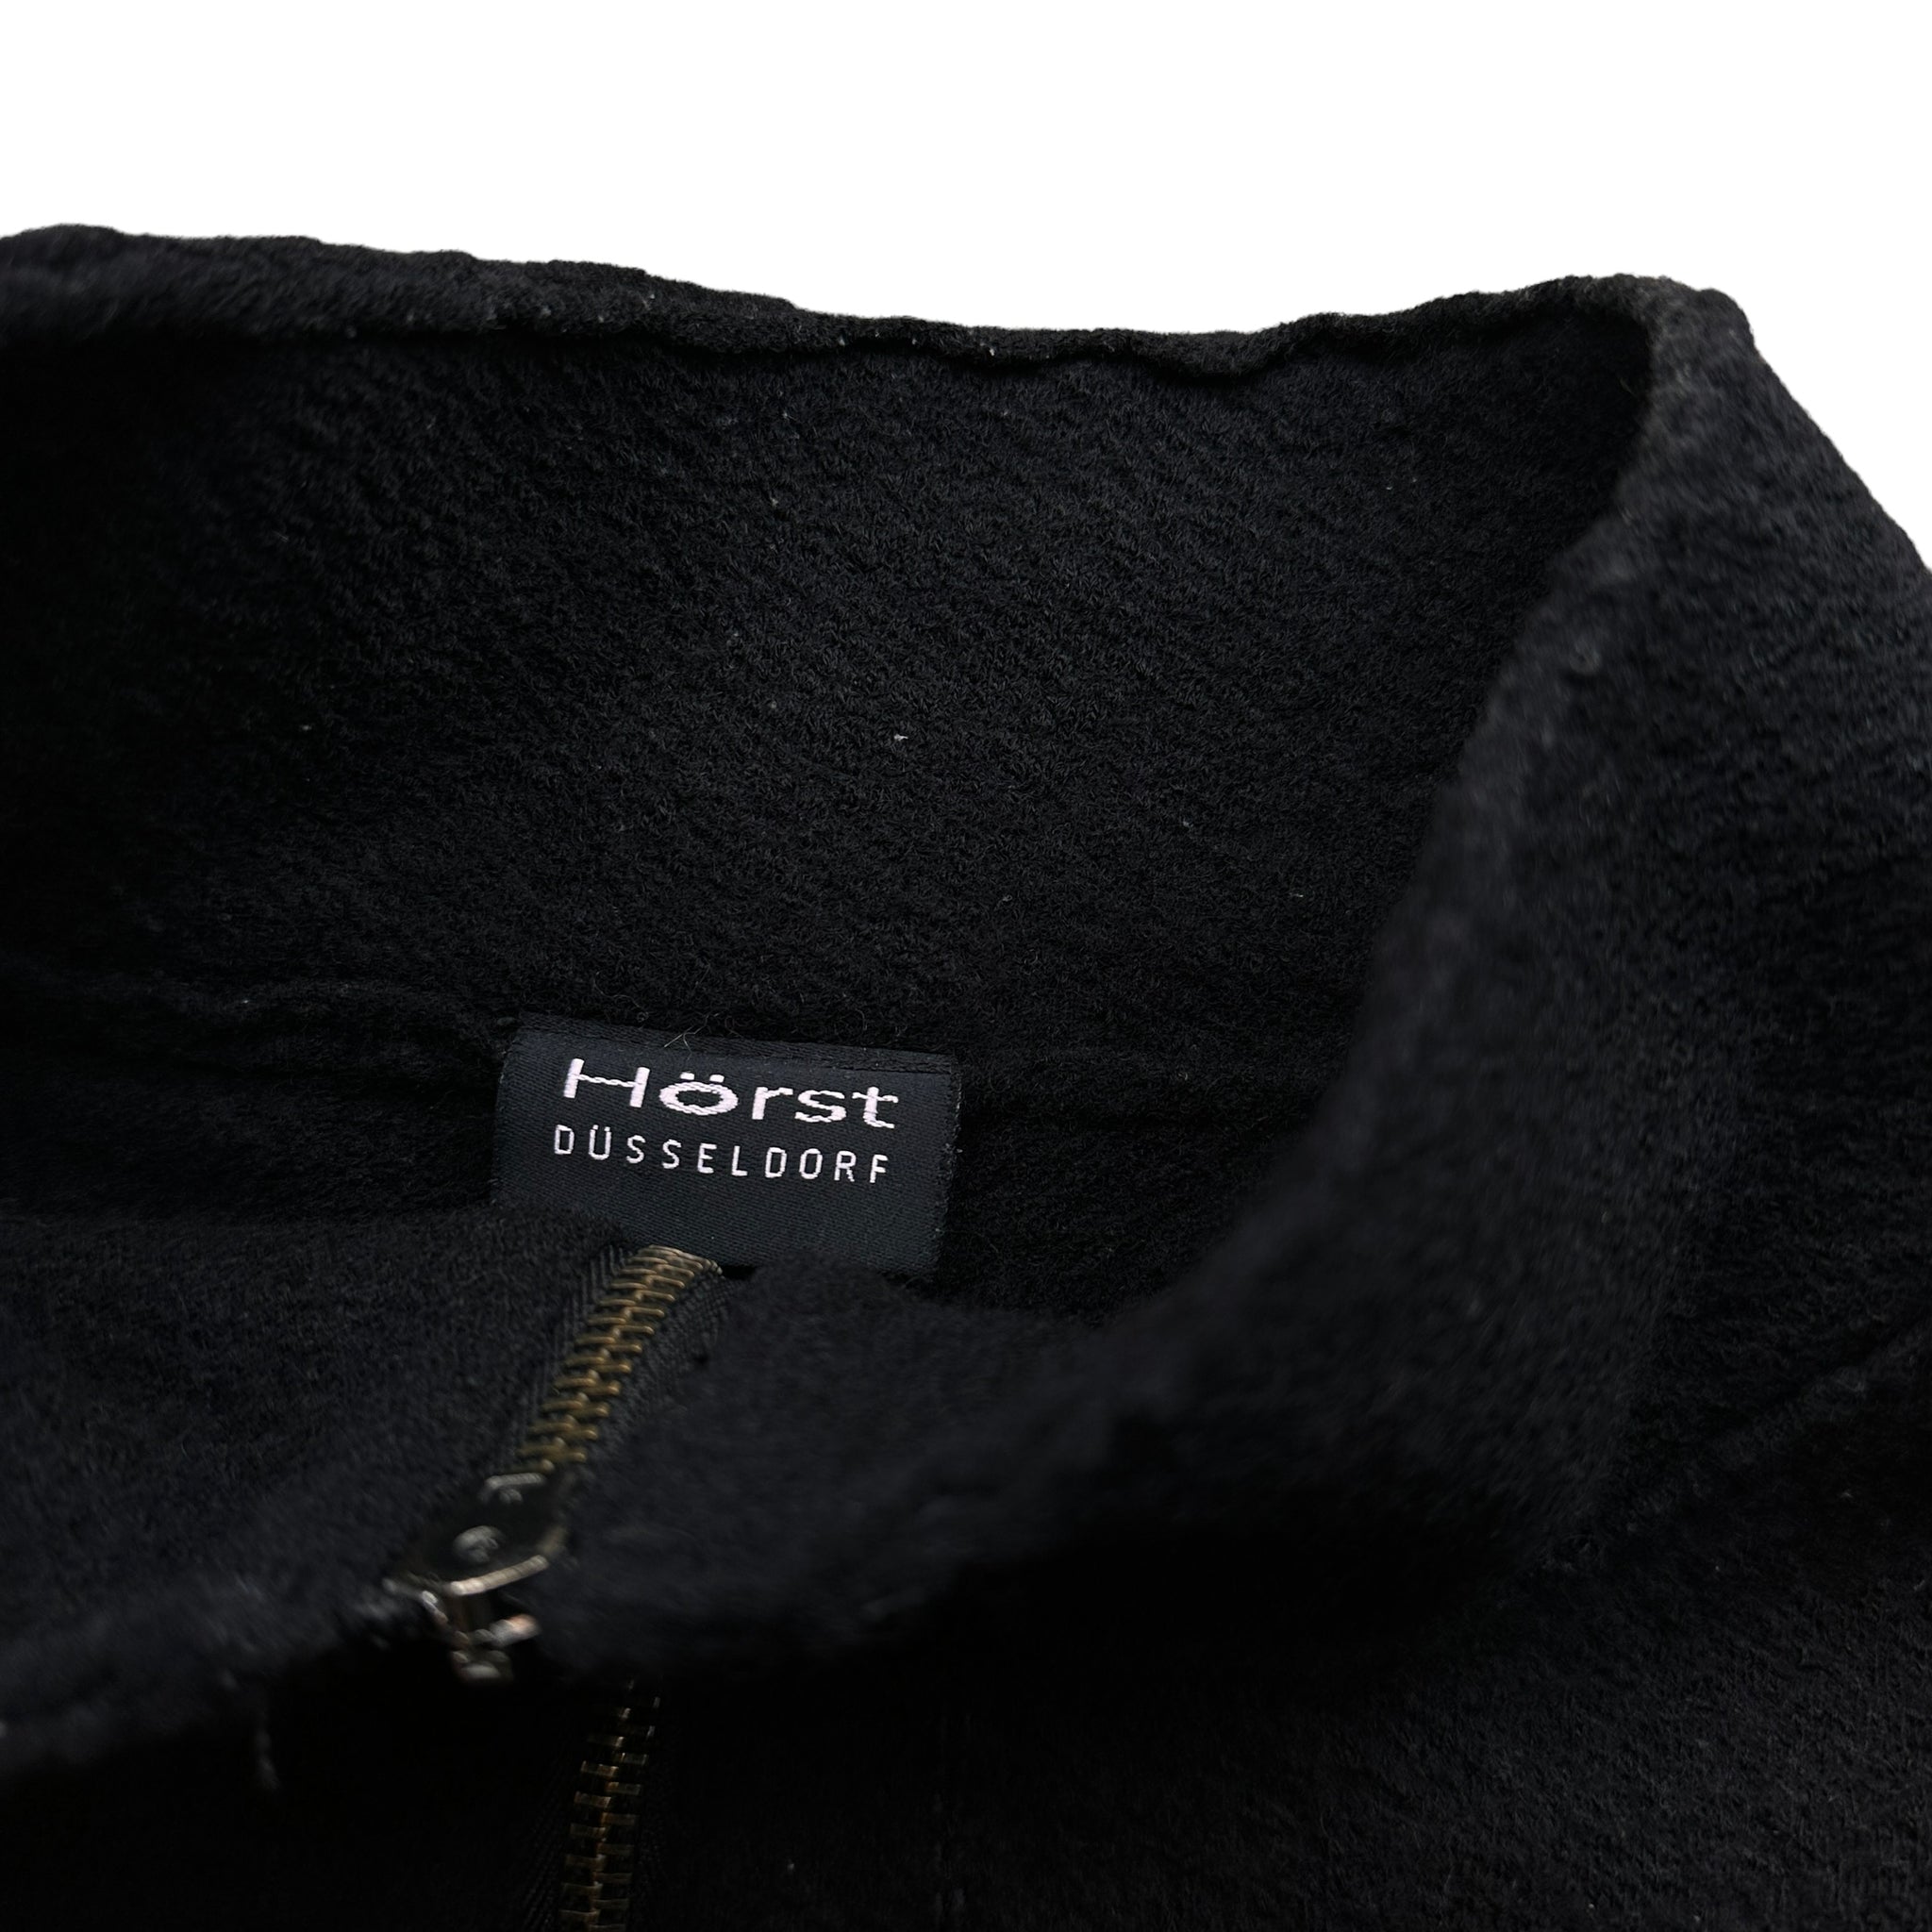 Horst wool zip jacket XL